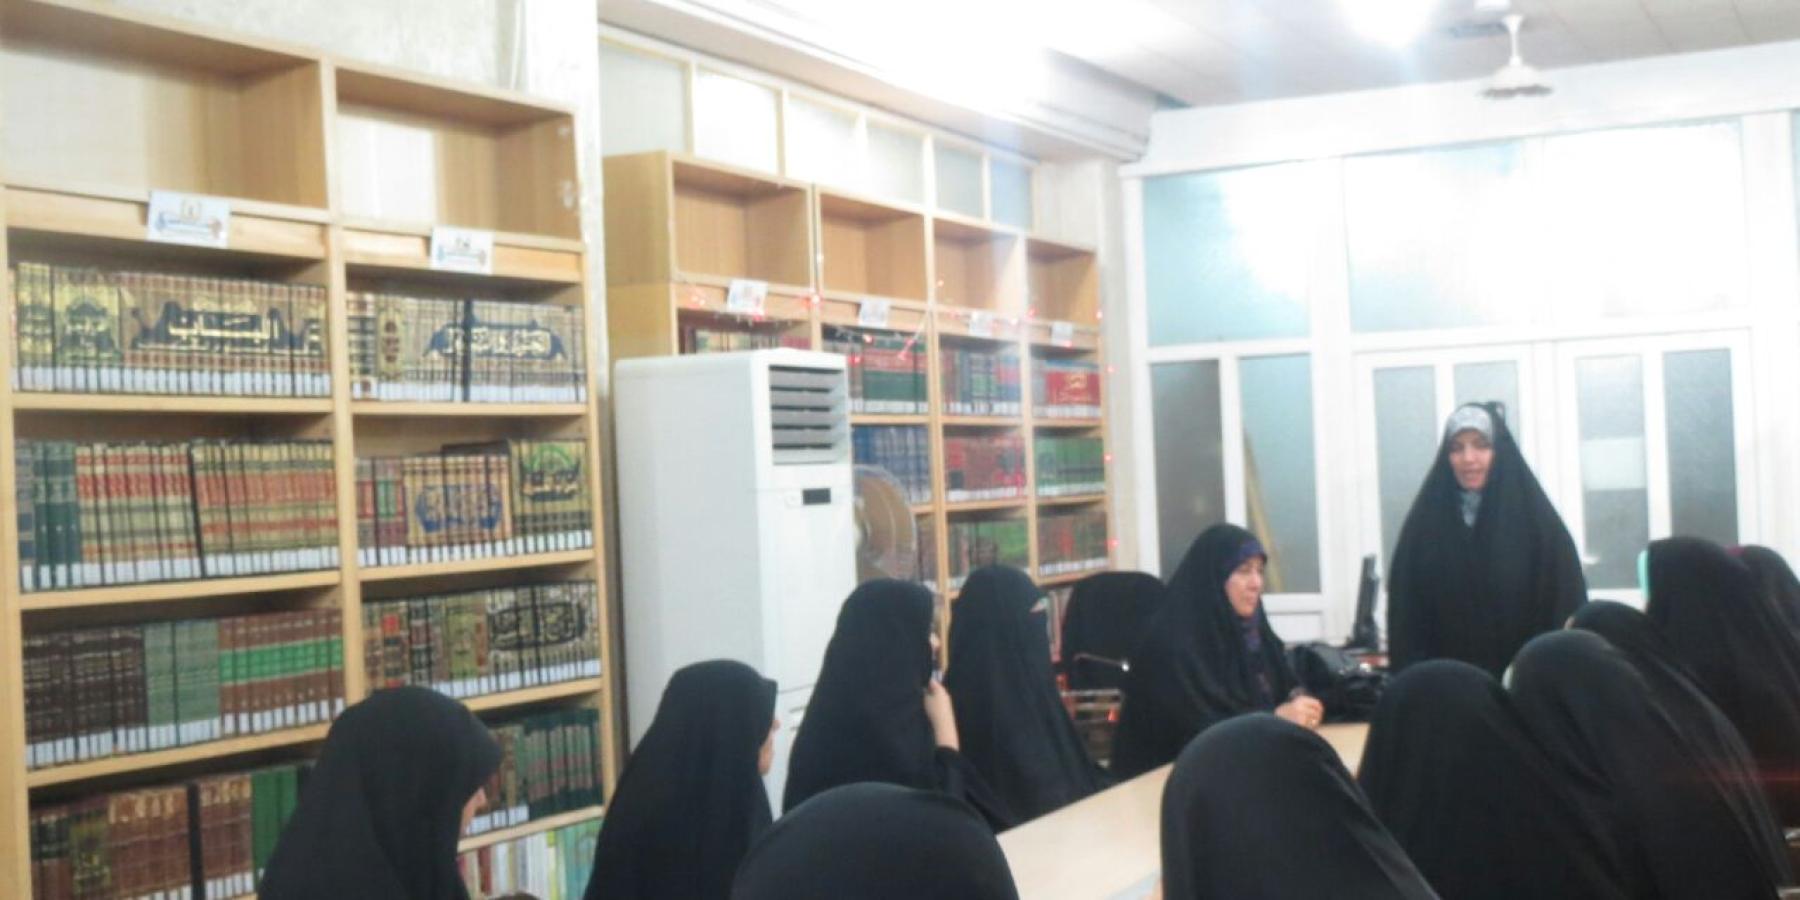 طالبات جامعة الزهراء (عليها السلام) في طهران تستعين بالمكتبة الحيدرية لاكمال رسائلهن الجامعية